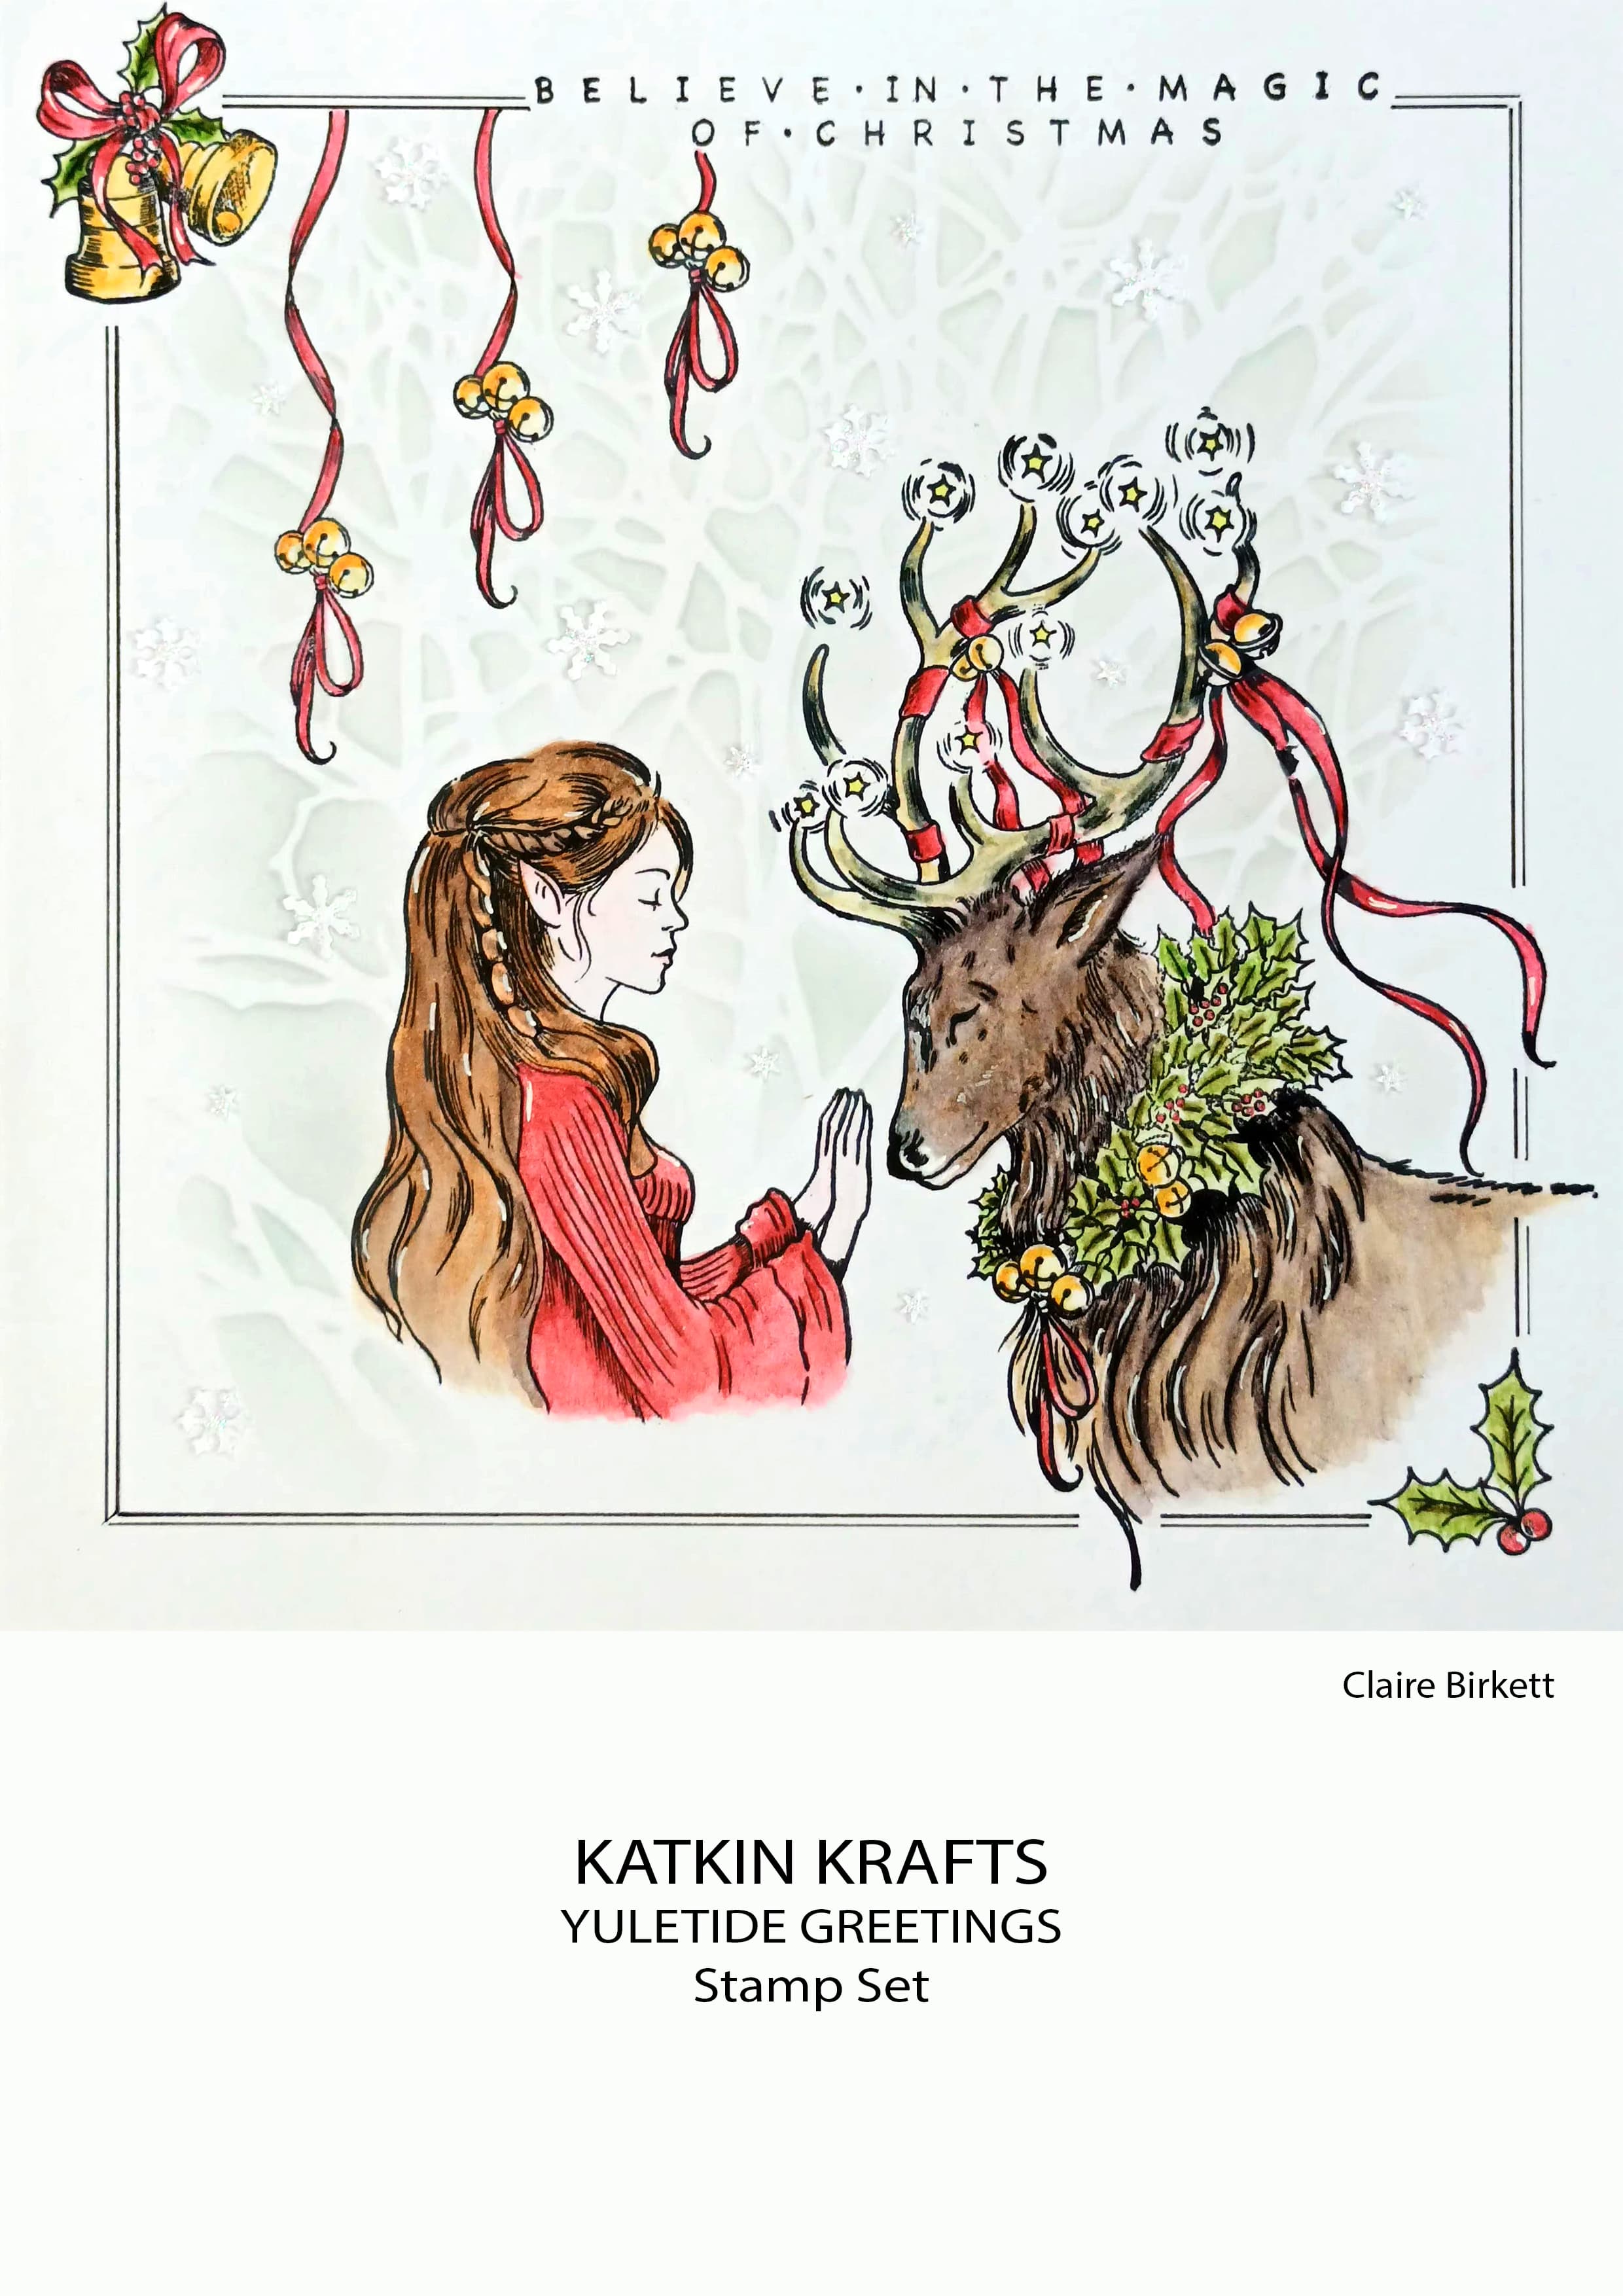 Katkin Krafts Yuletide Greetings 6 in x 8 in Clear Stamp Set